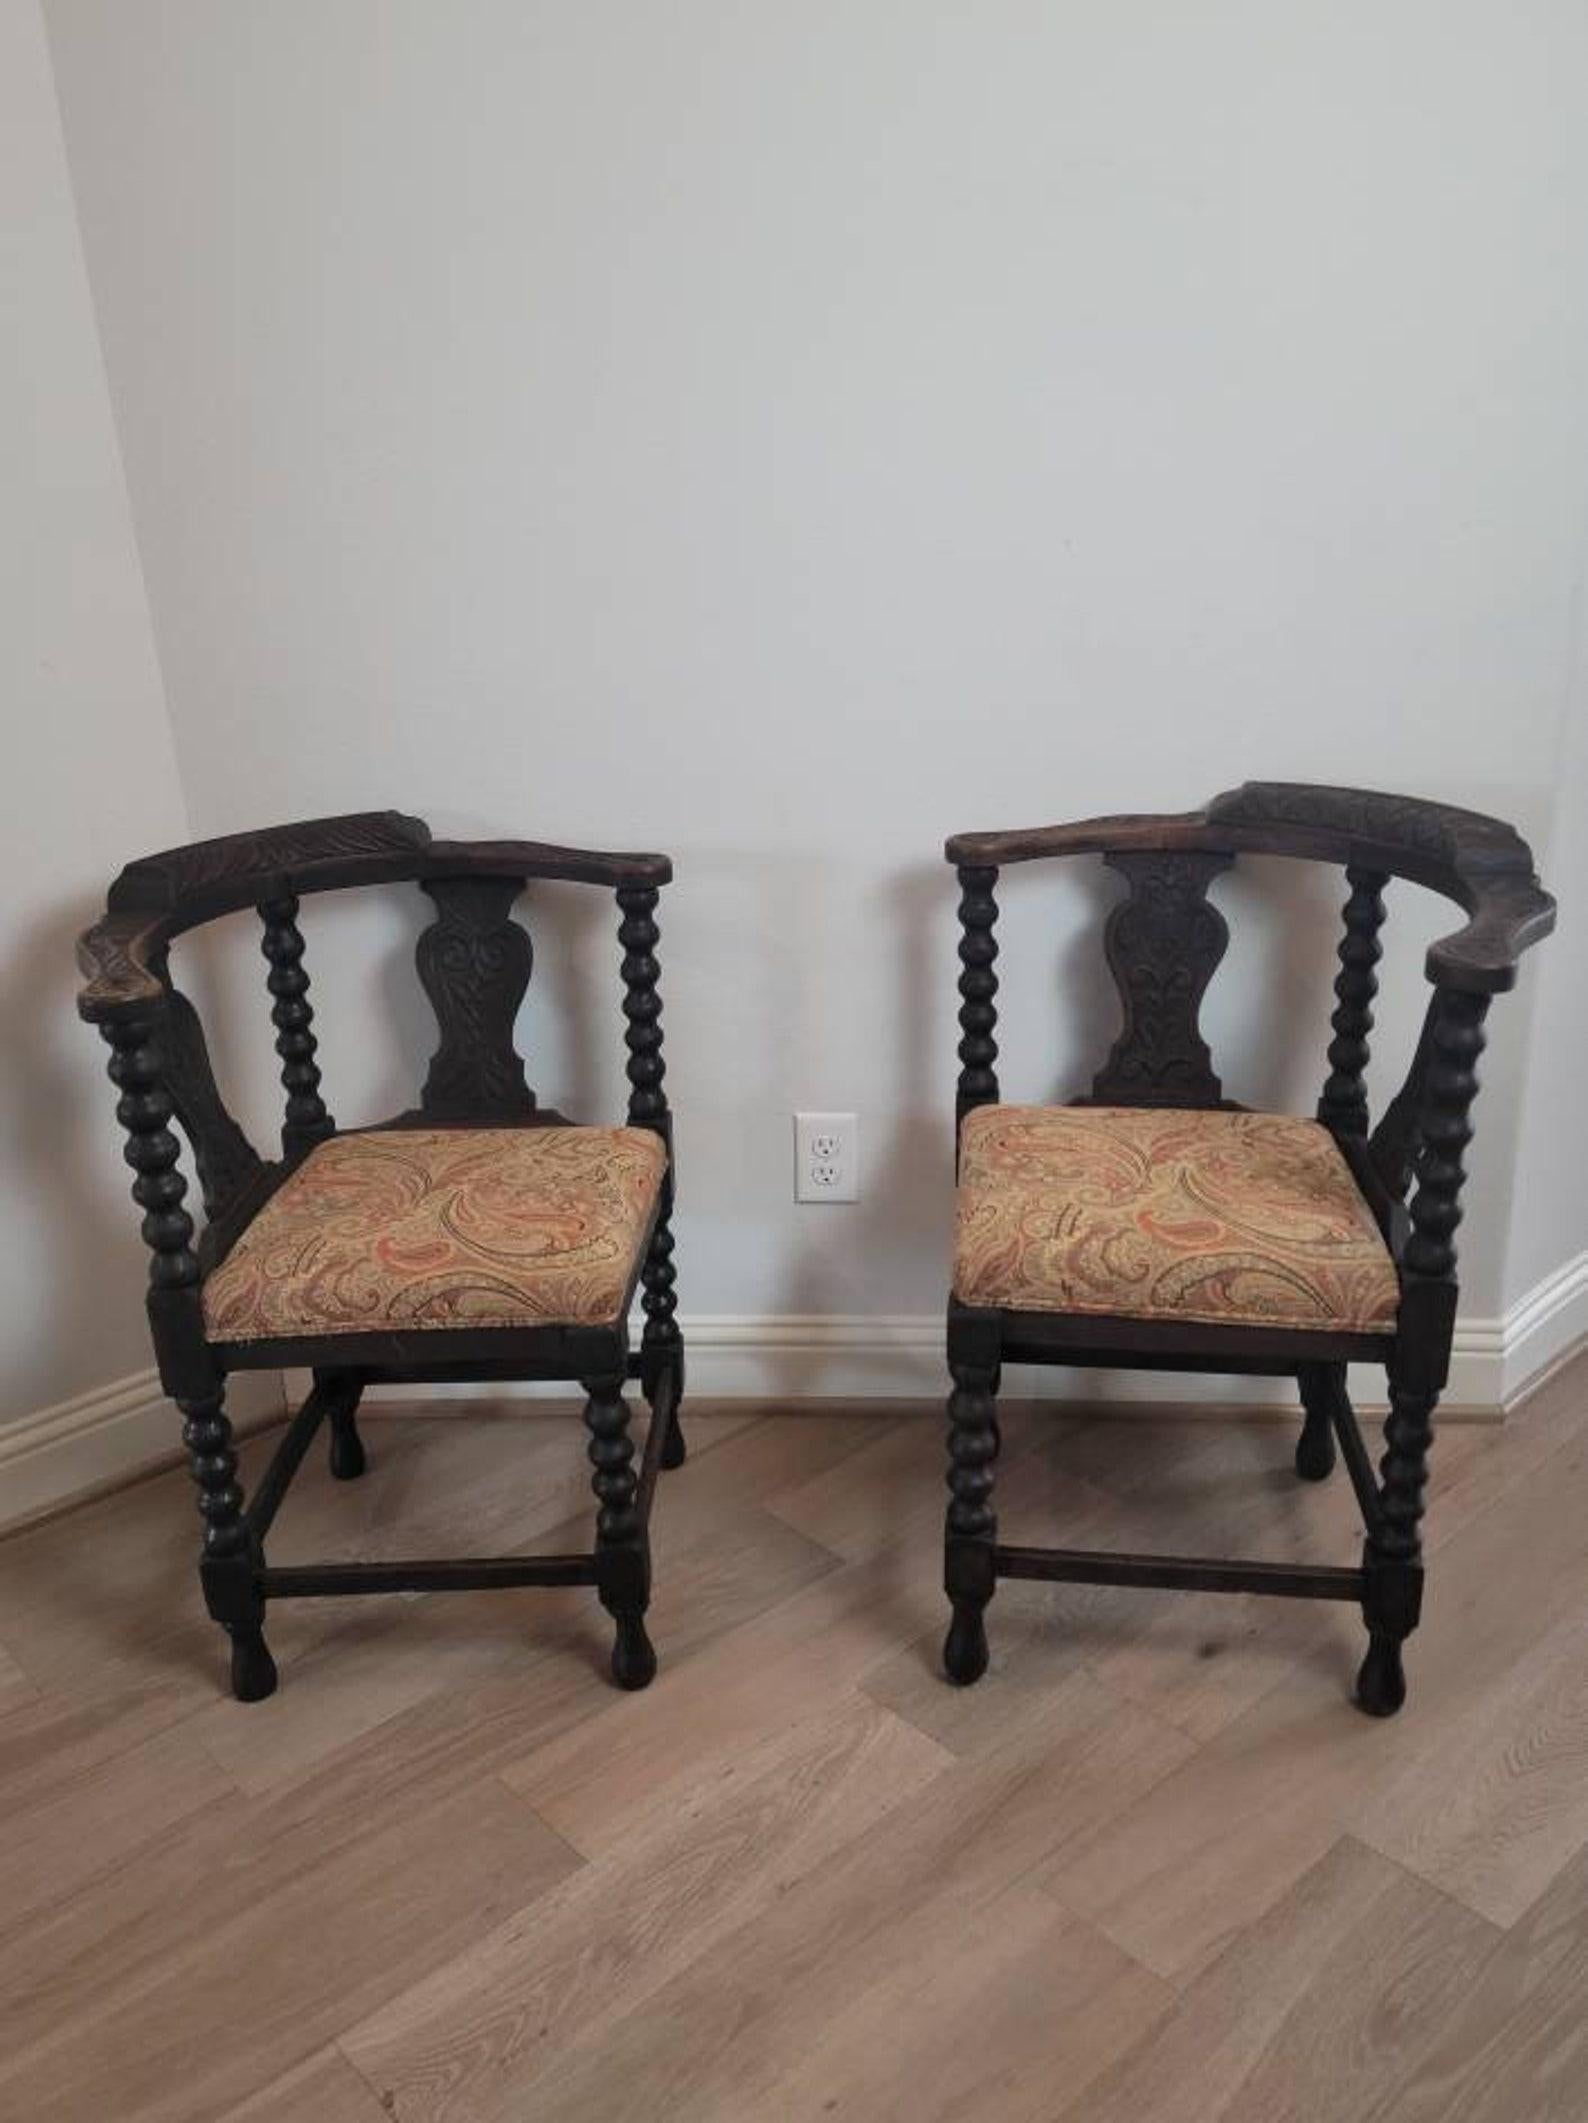 Une paire de chaises d'angle anciennes en chêne sculpté européen avec une patine sombre et riche magnifiquement vieillie. 

Née au début ou au milieu du XIXe siècle, elle a été fabriquée à la main dans le goût de la Renaissance mauresque, avec une